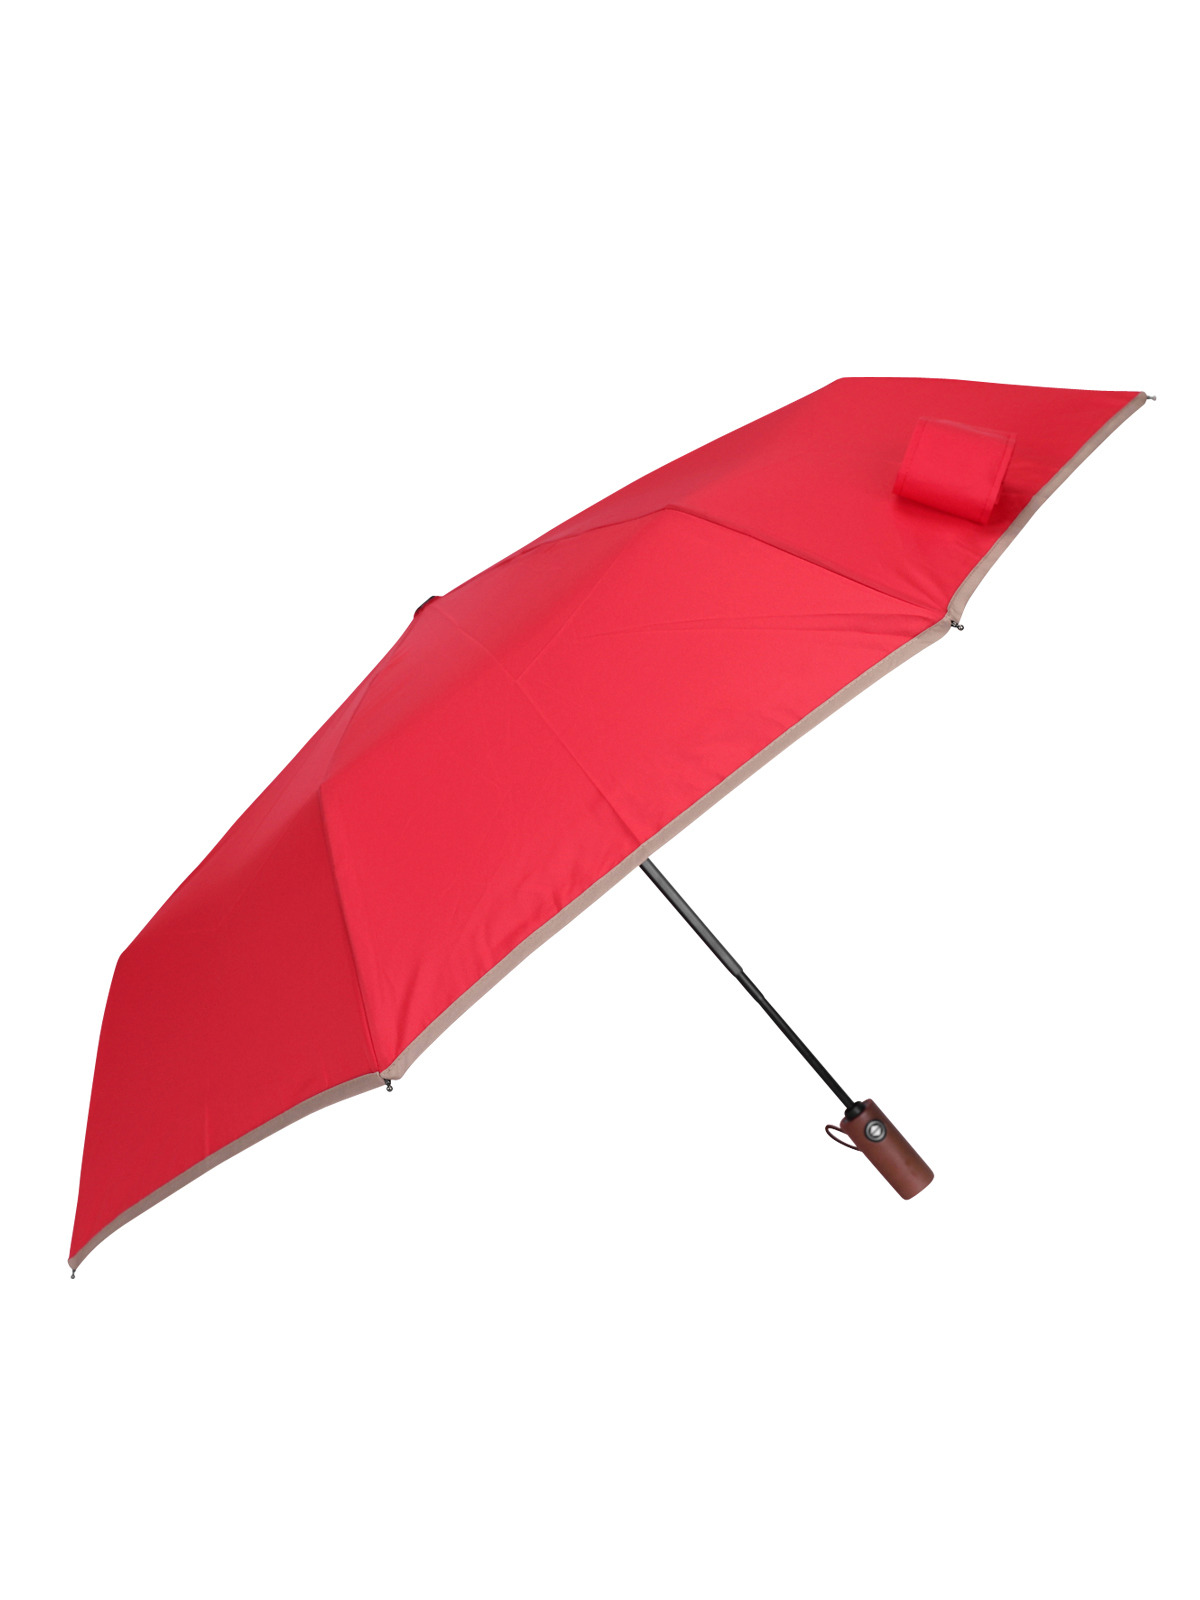 엘케이트 여성 우산 LDDR078 완전 자동 접이식 우드 핸들